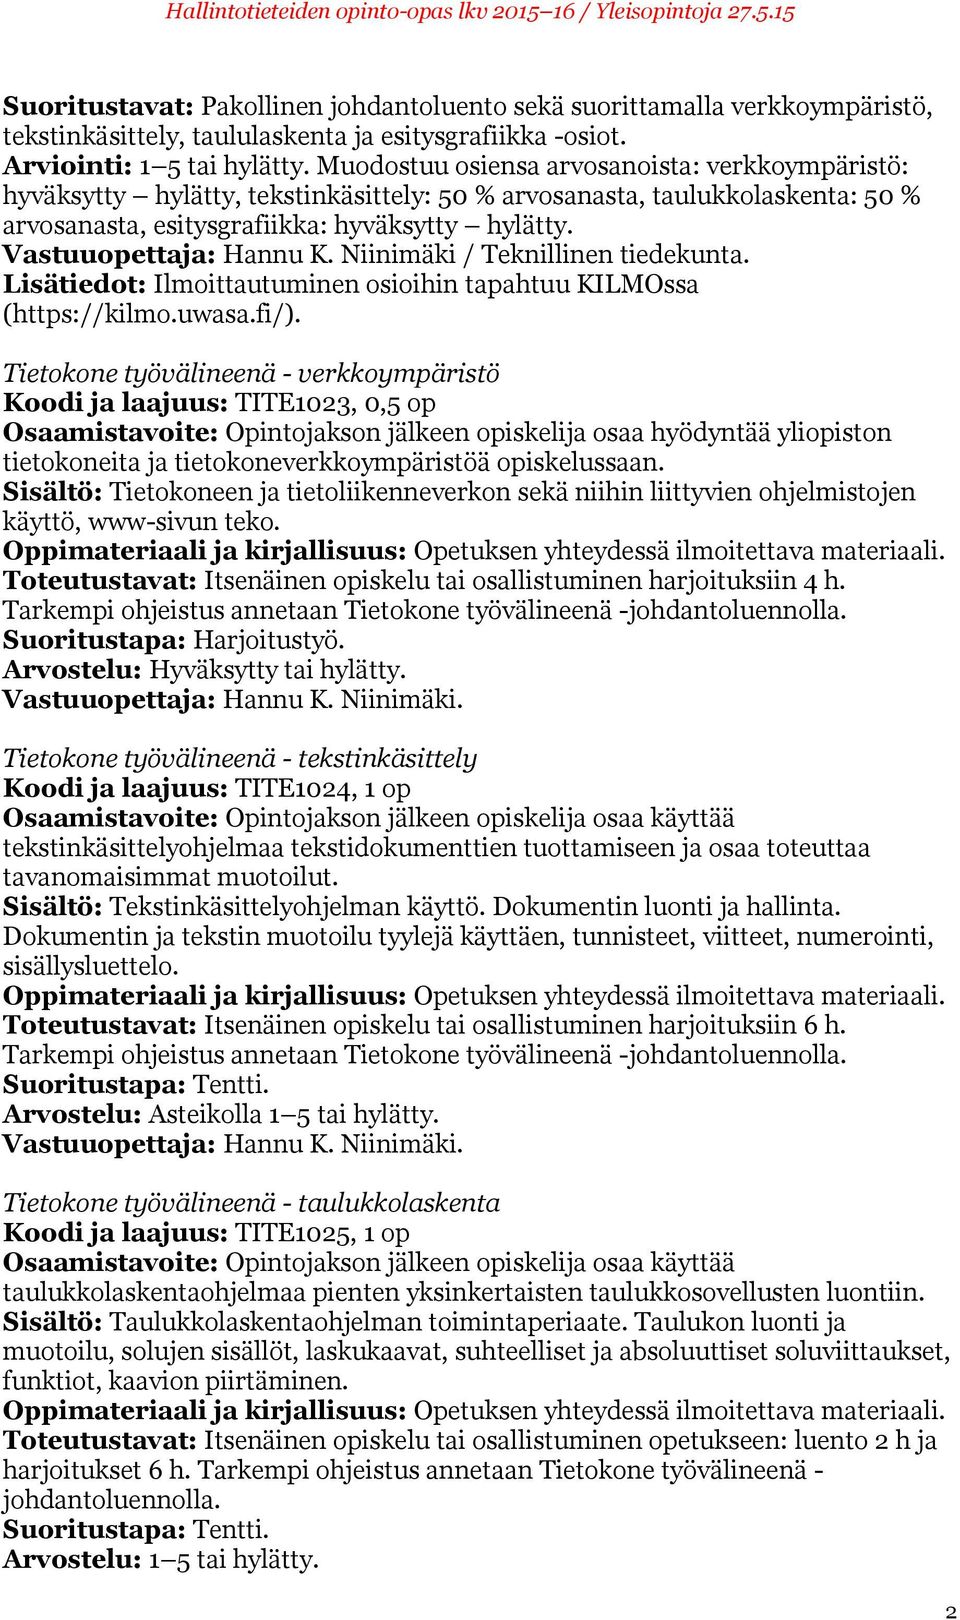 Vastuuopettaja: Hannu K. Niinimäki / Teknillinen tiedekunta. Lisätiedot: Ilmoittautuminen osioihin tapahtuu KILMOssa (https://kilmo.uwasa.fi/).